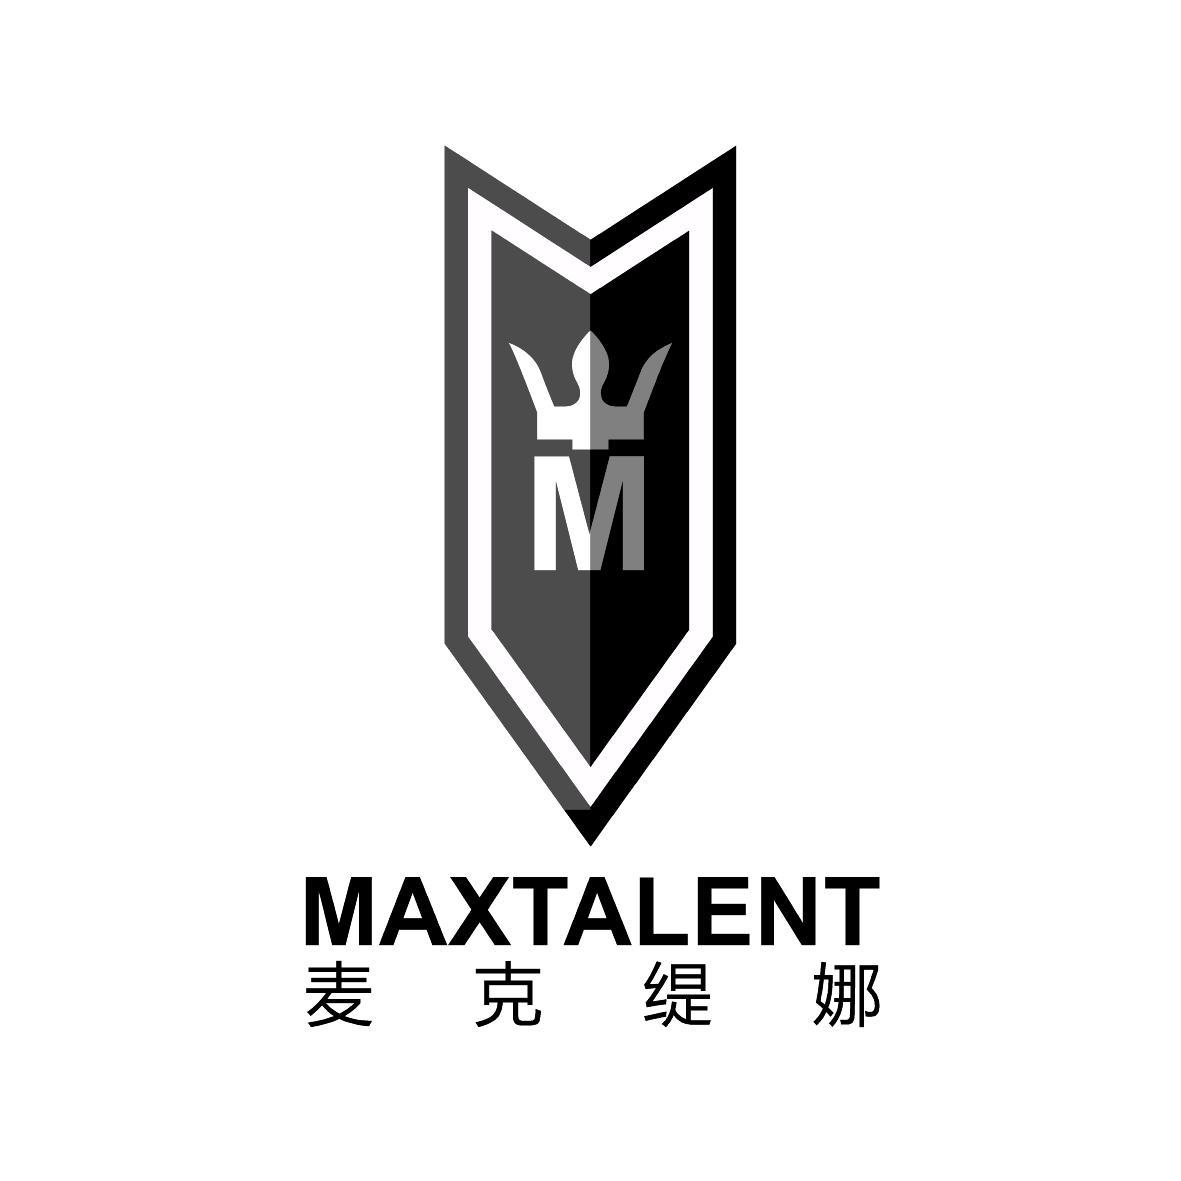  MAXTALENT M